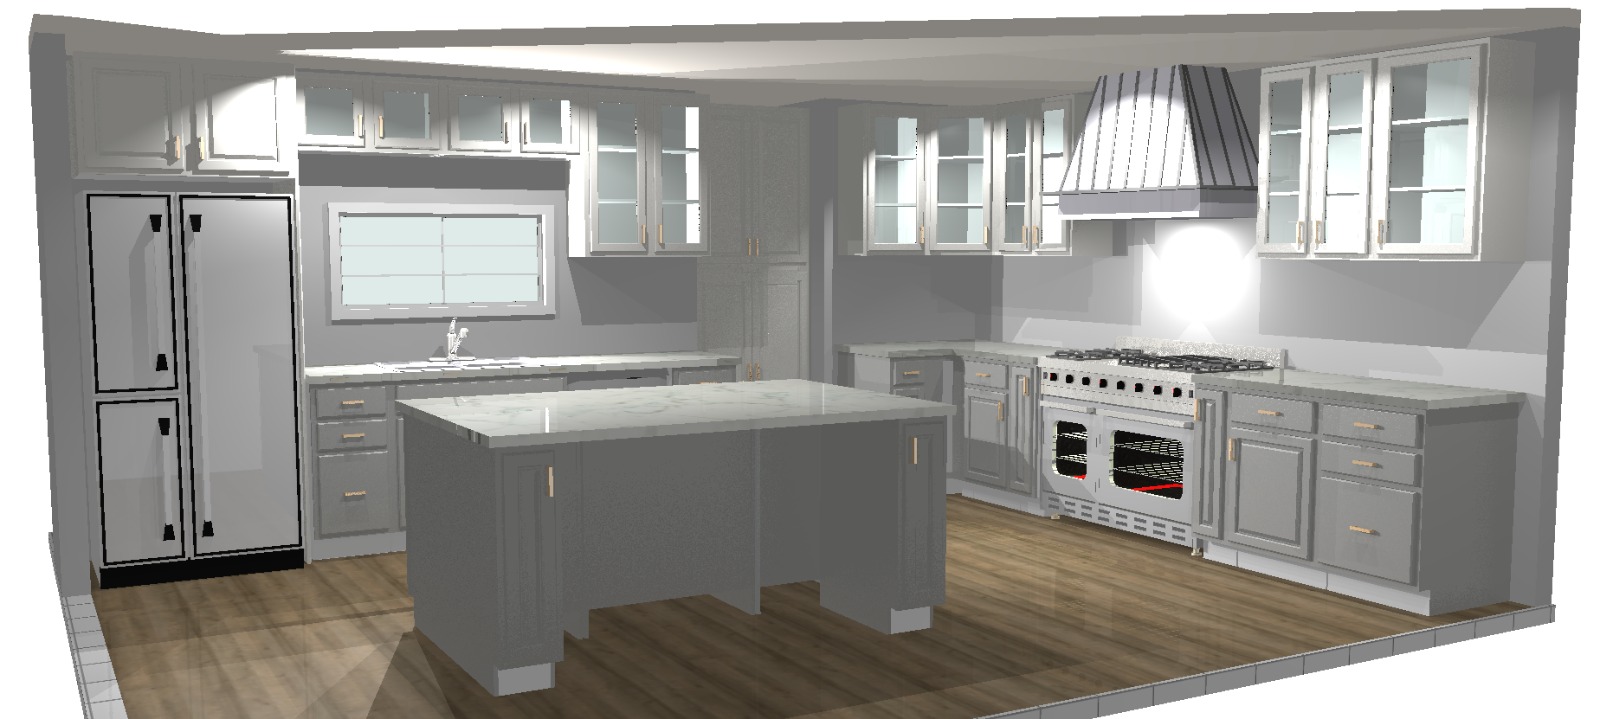 3D Kitchen Design Render